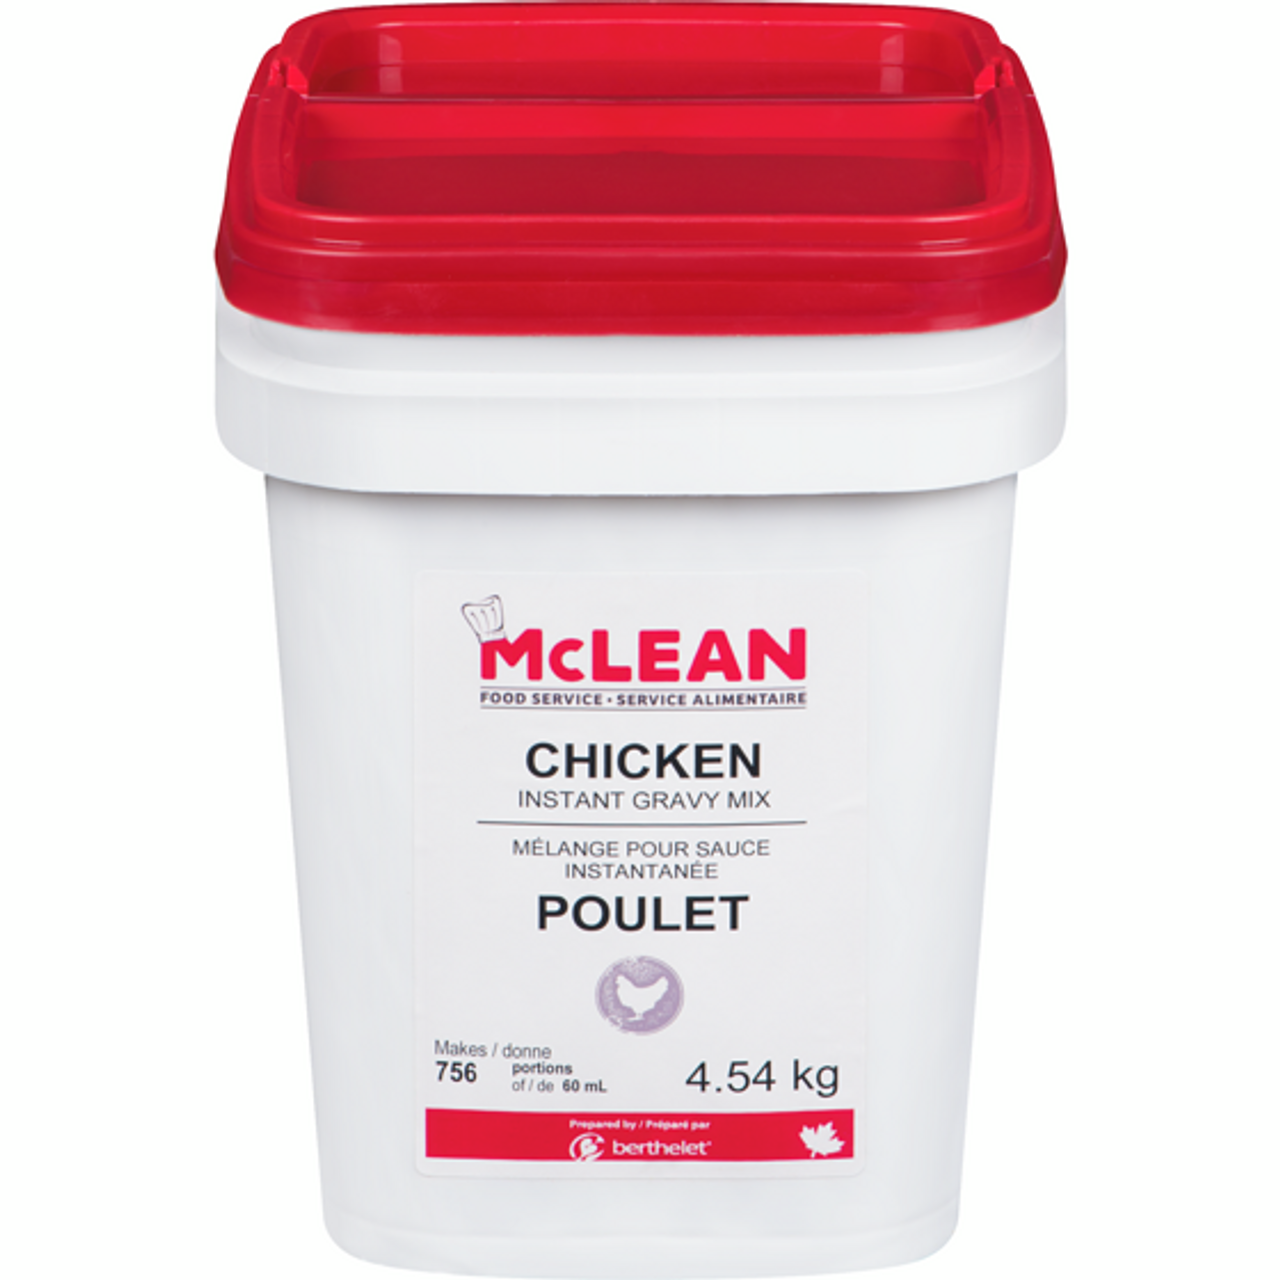 MCLEAN Chicken Gravy Mix 4.54 kg